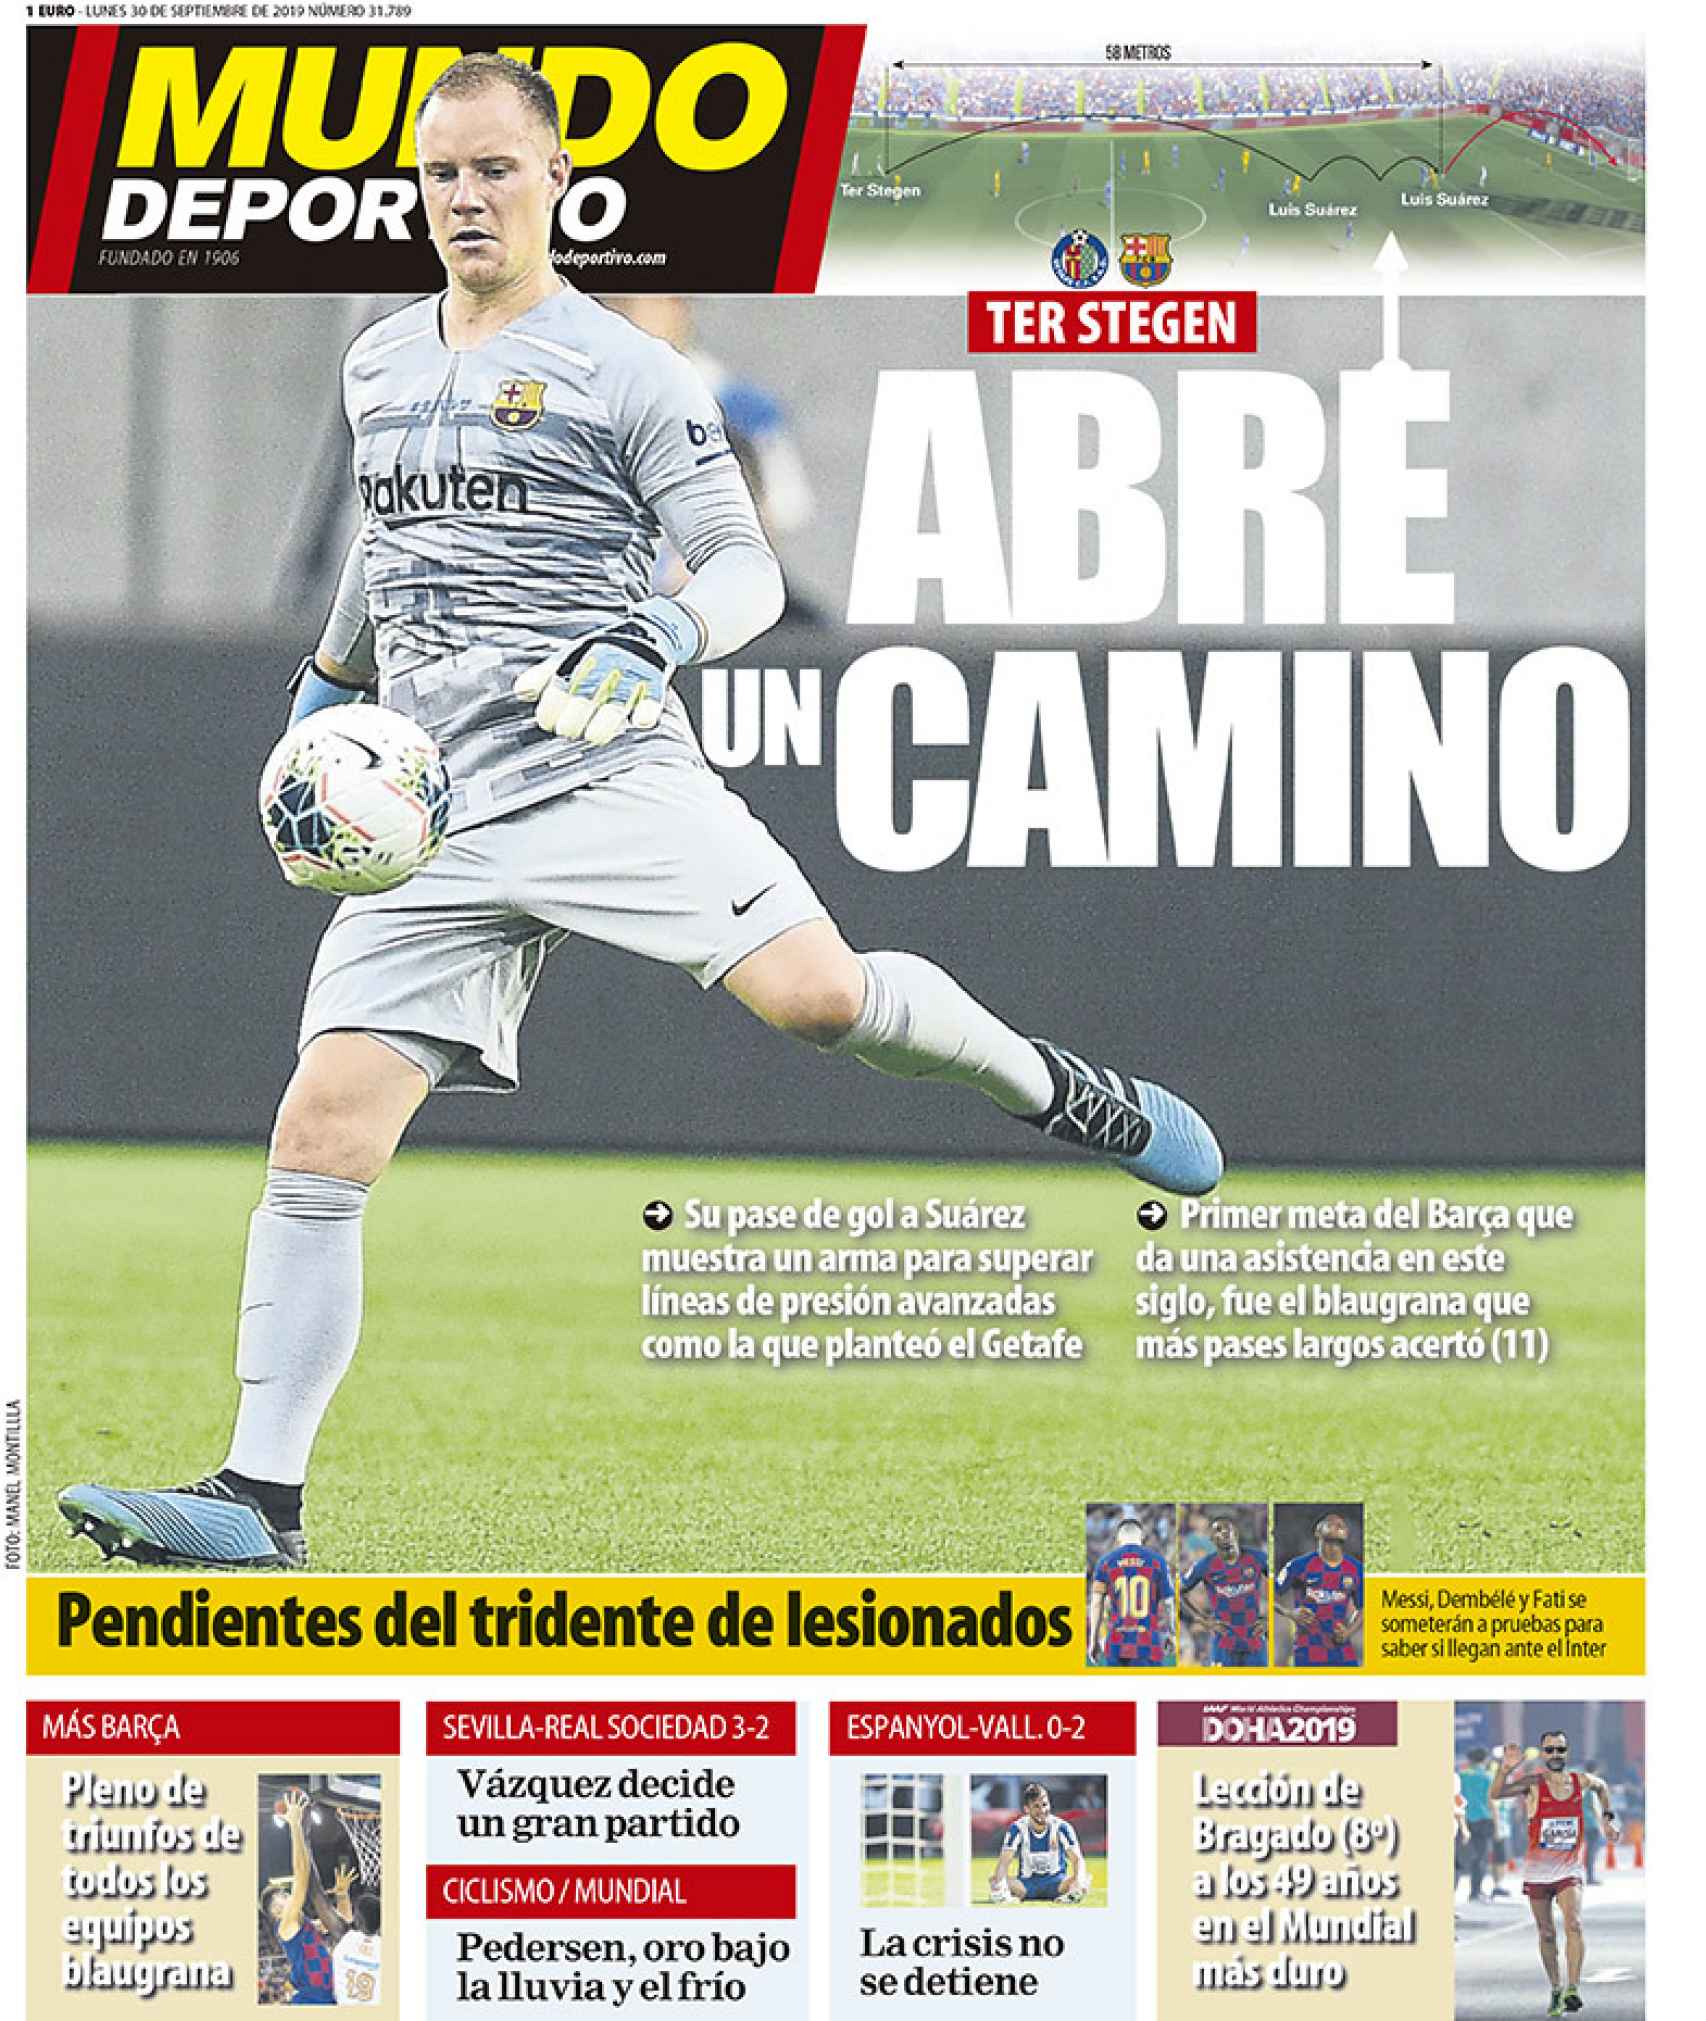 La portada del diario Mundo Deportivo (30/09/2019)